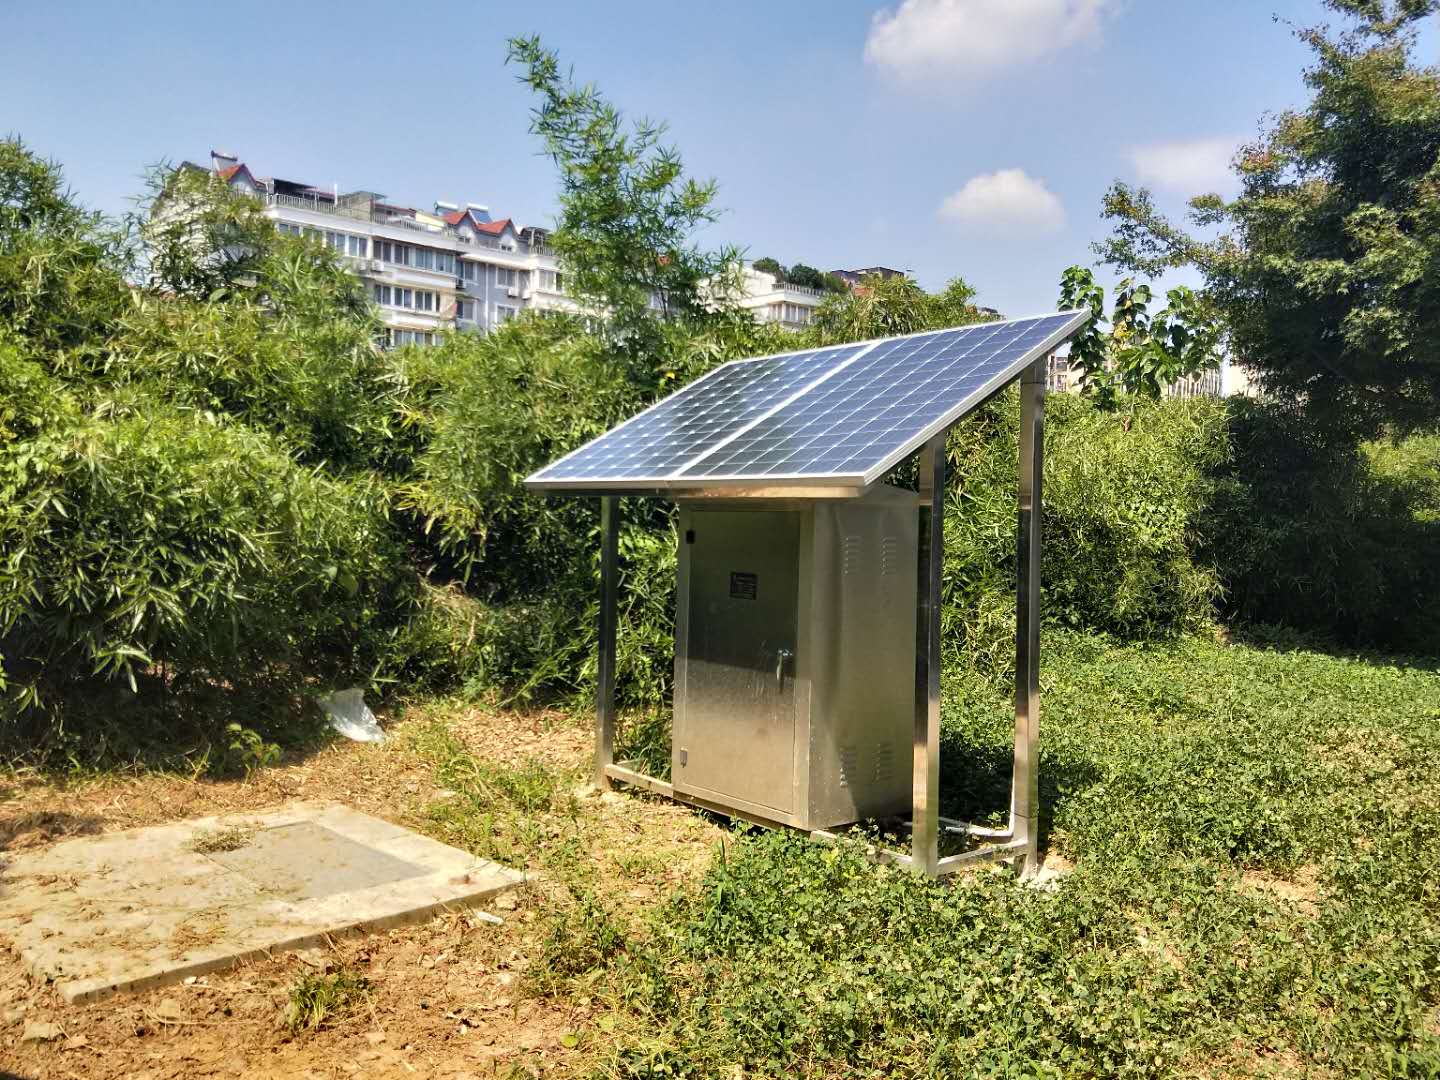 景德镇太阳能微动力污水处理设备 降低设备和工程成本